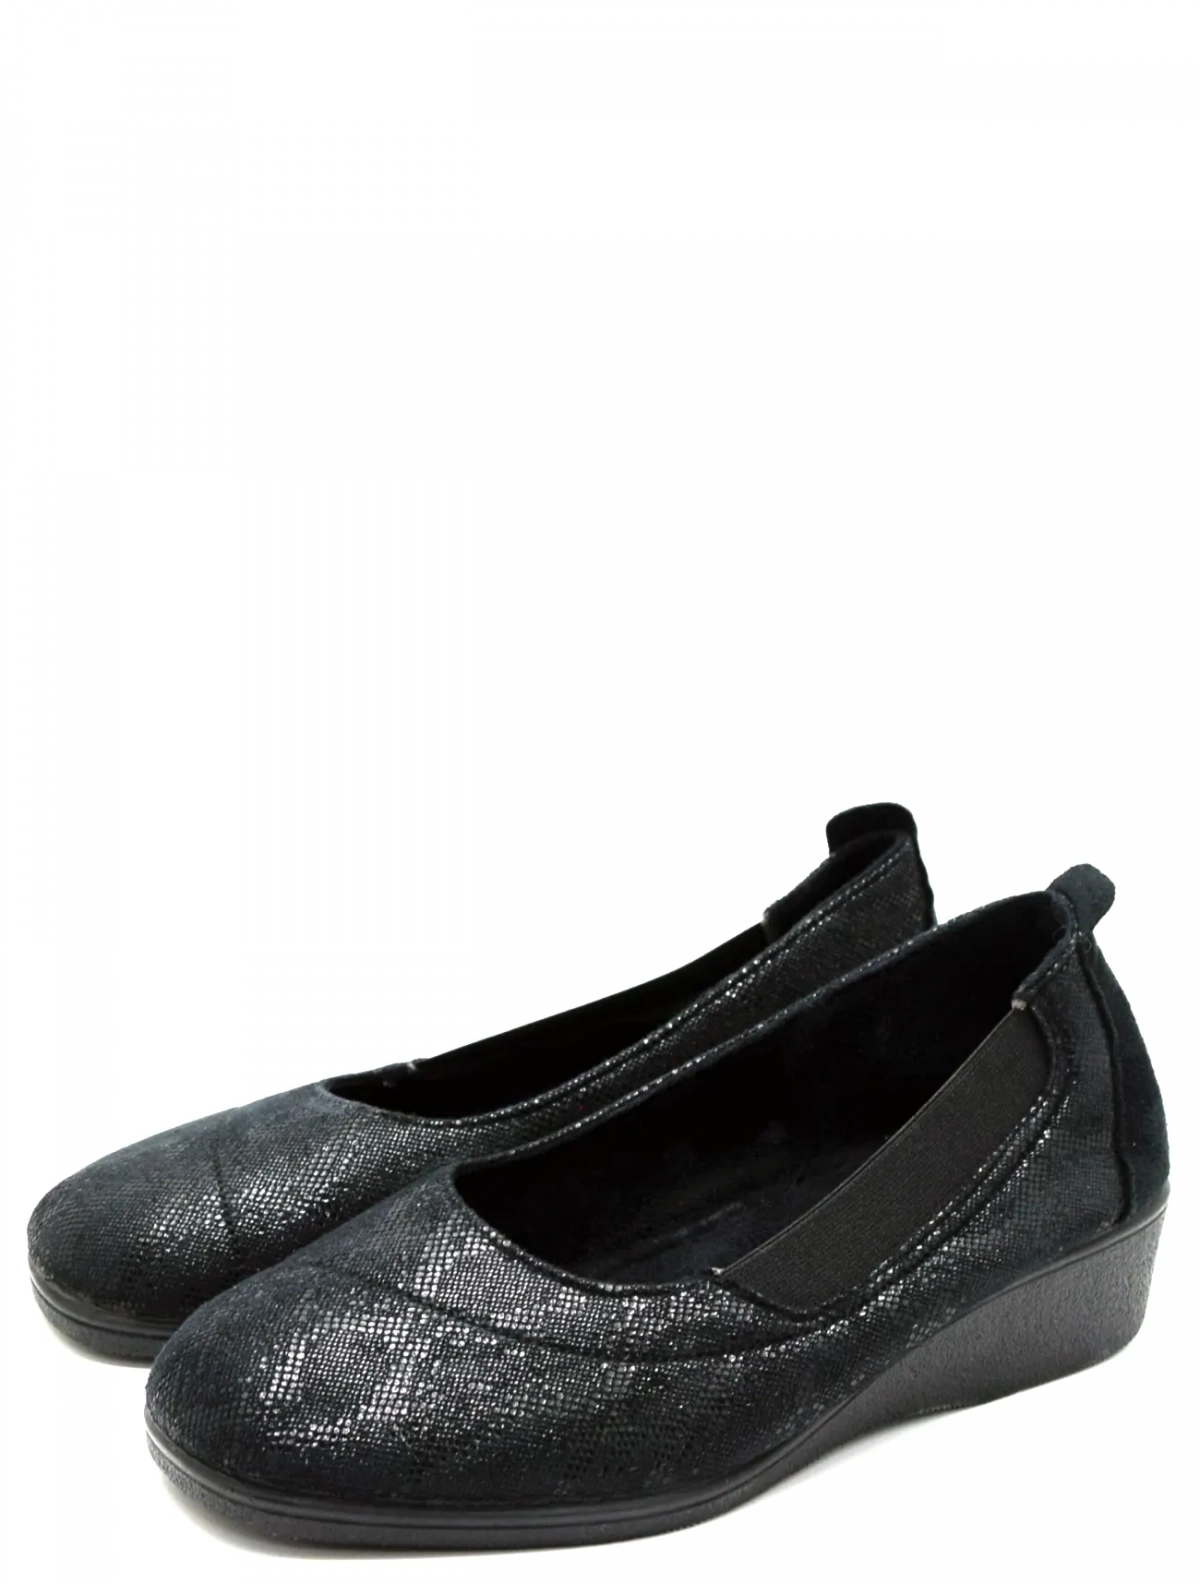 Imara Moda 183-A212-001 женские туфли